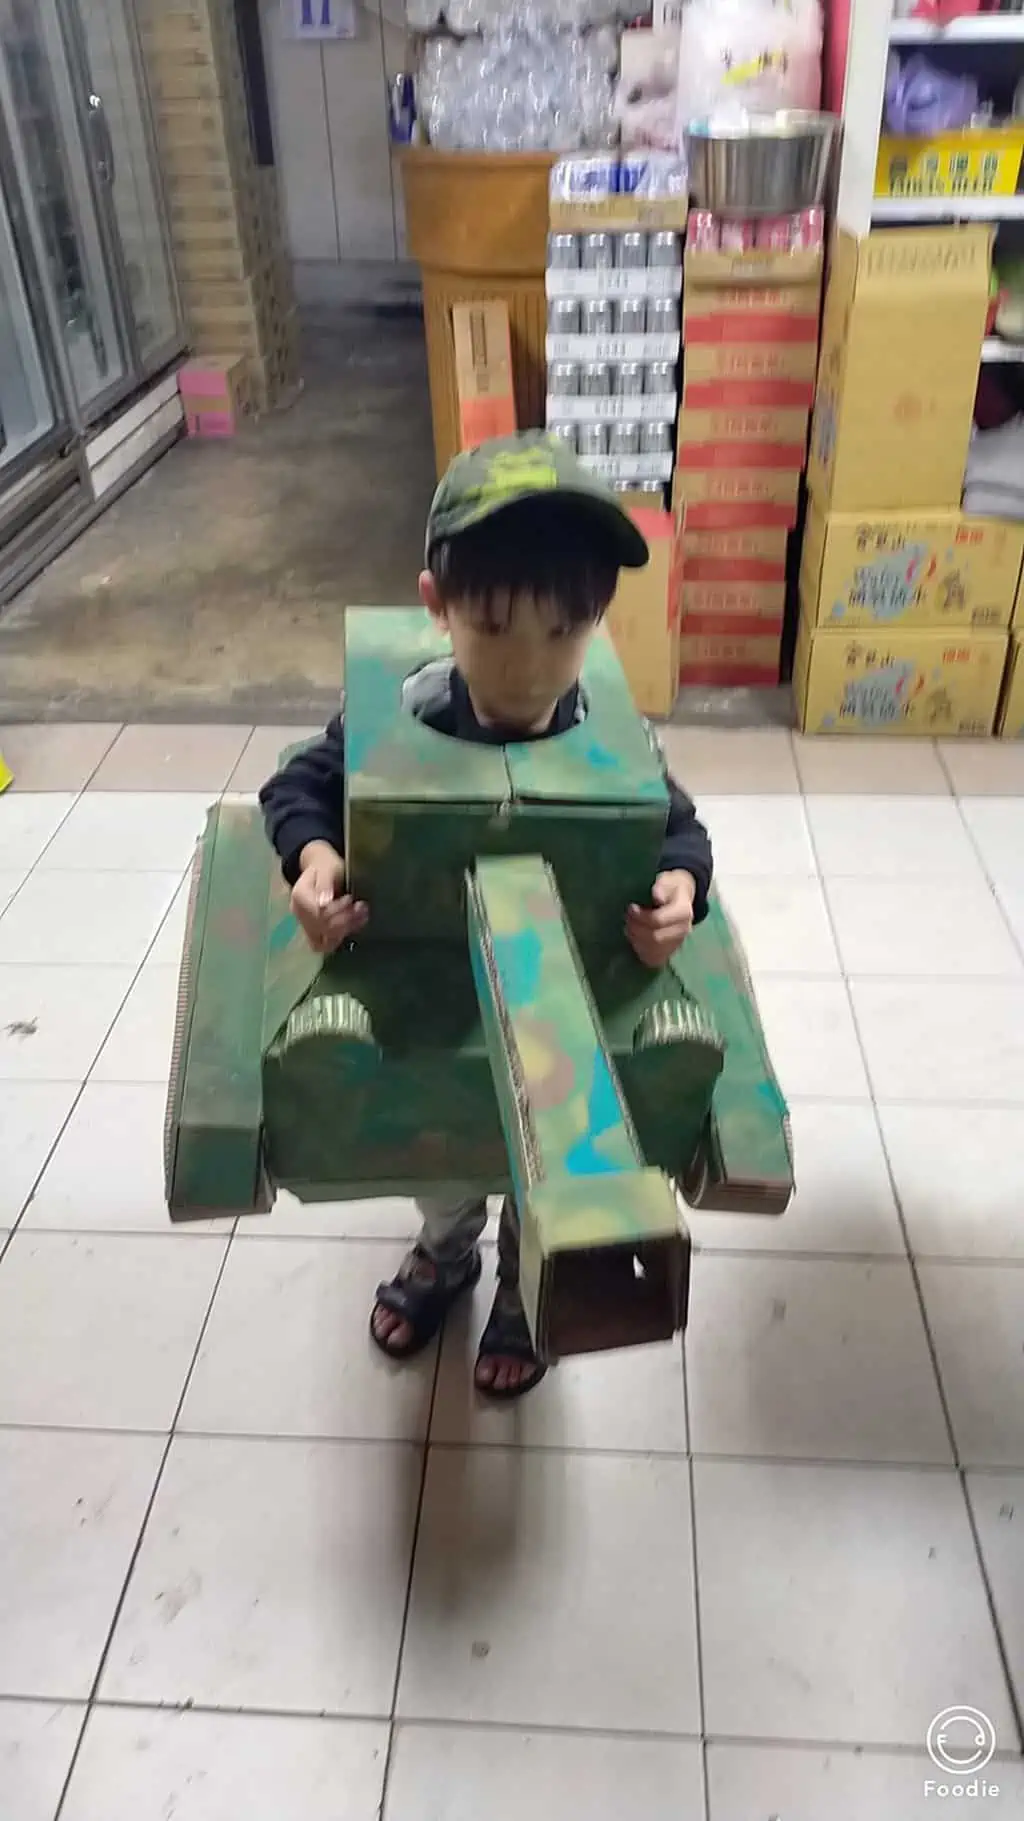 用紙箱做的迷彩戰車，小男生一定愛極了! (萬聖節裝扮)